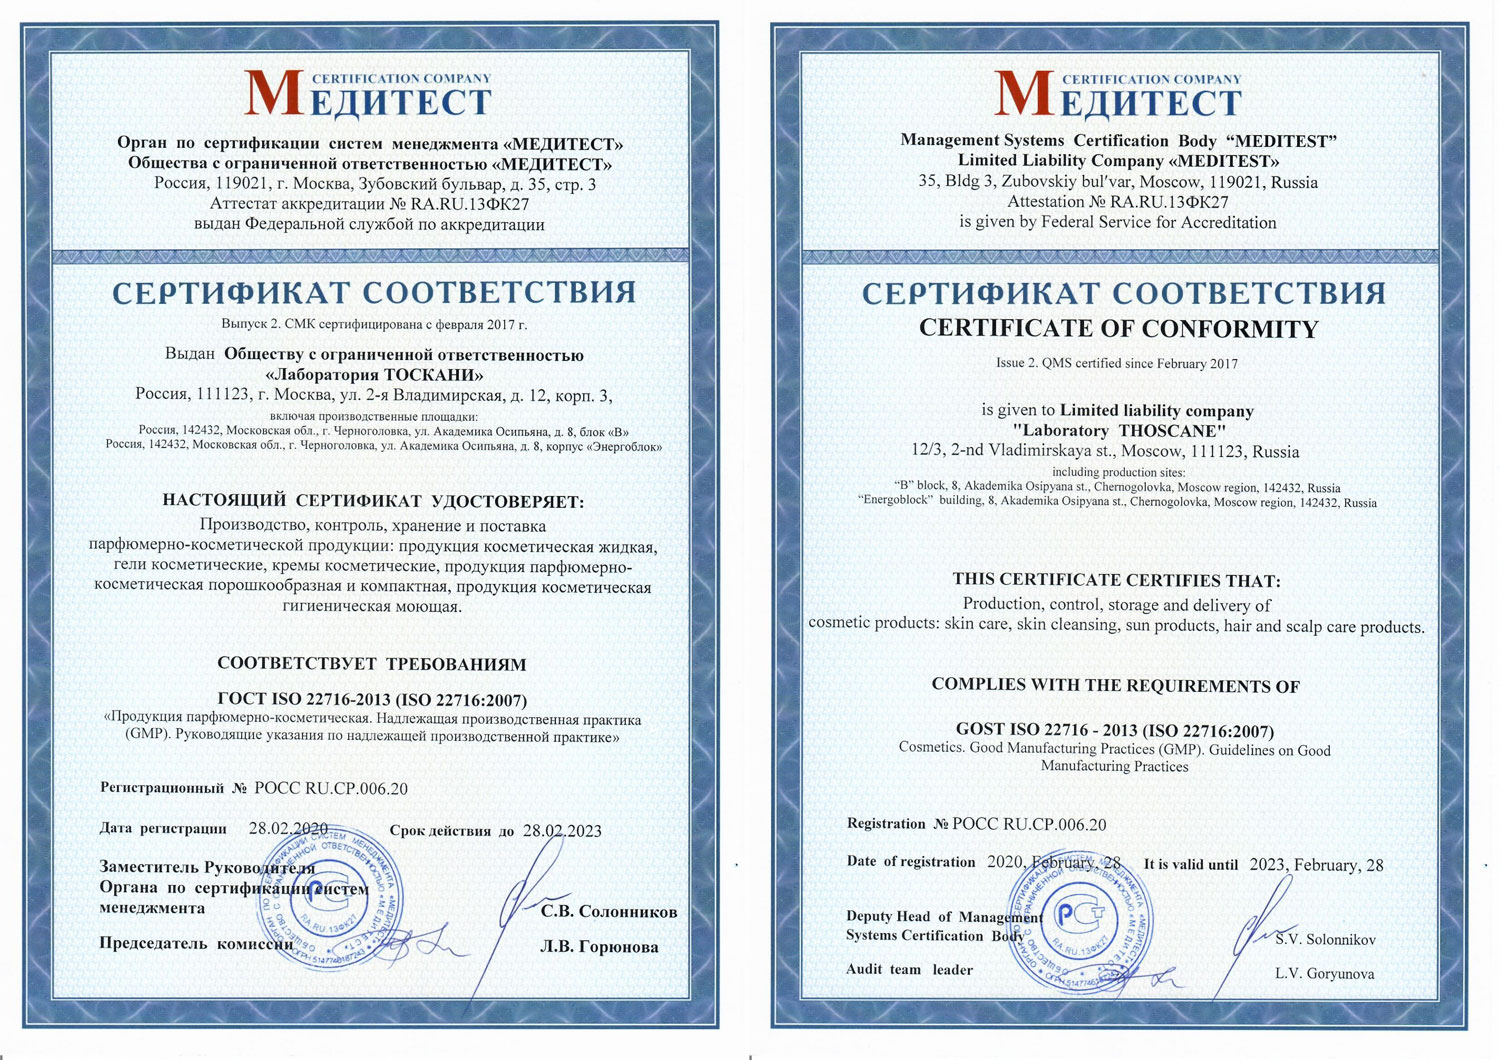 Сертификат соответствия ИСО 22716